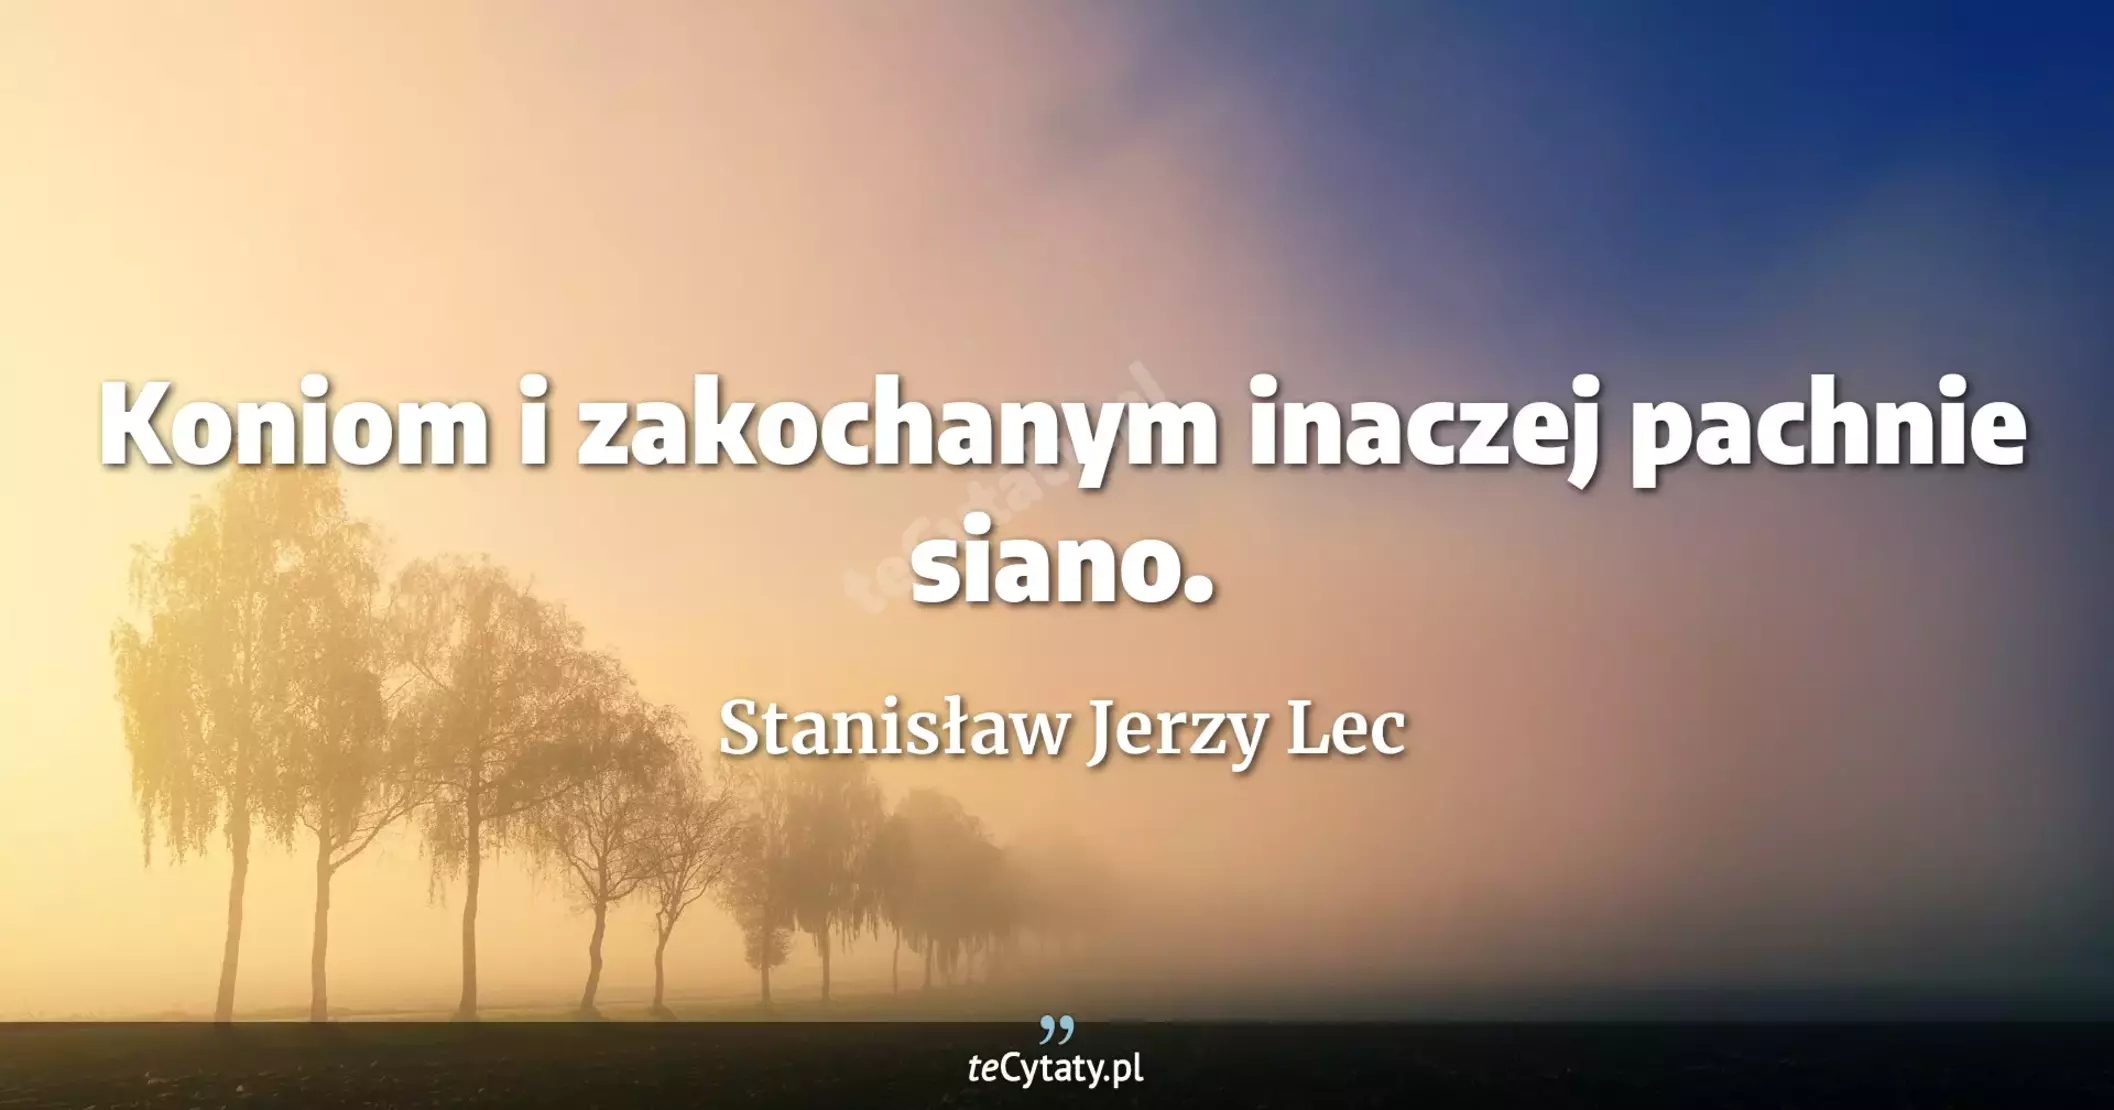 Koniom i zakochanym inaczej pachnie siano. - Stanisław Jerzy Lec